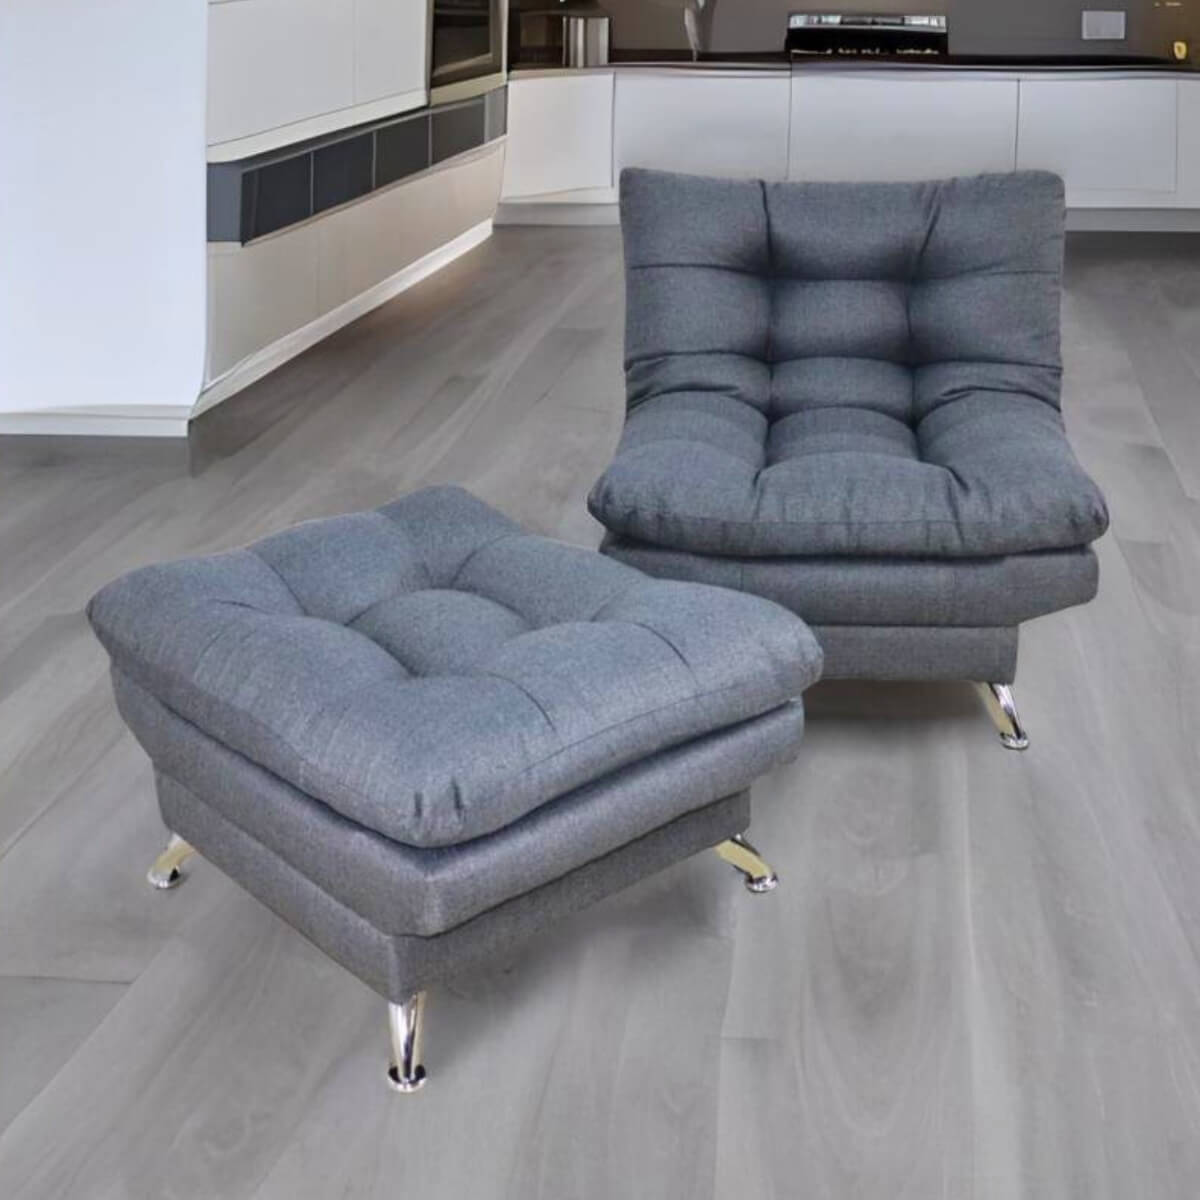 sillón con taburete individual gris donde comprar cerca de mi norval #color_oxford